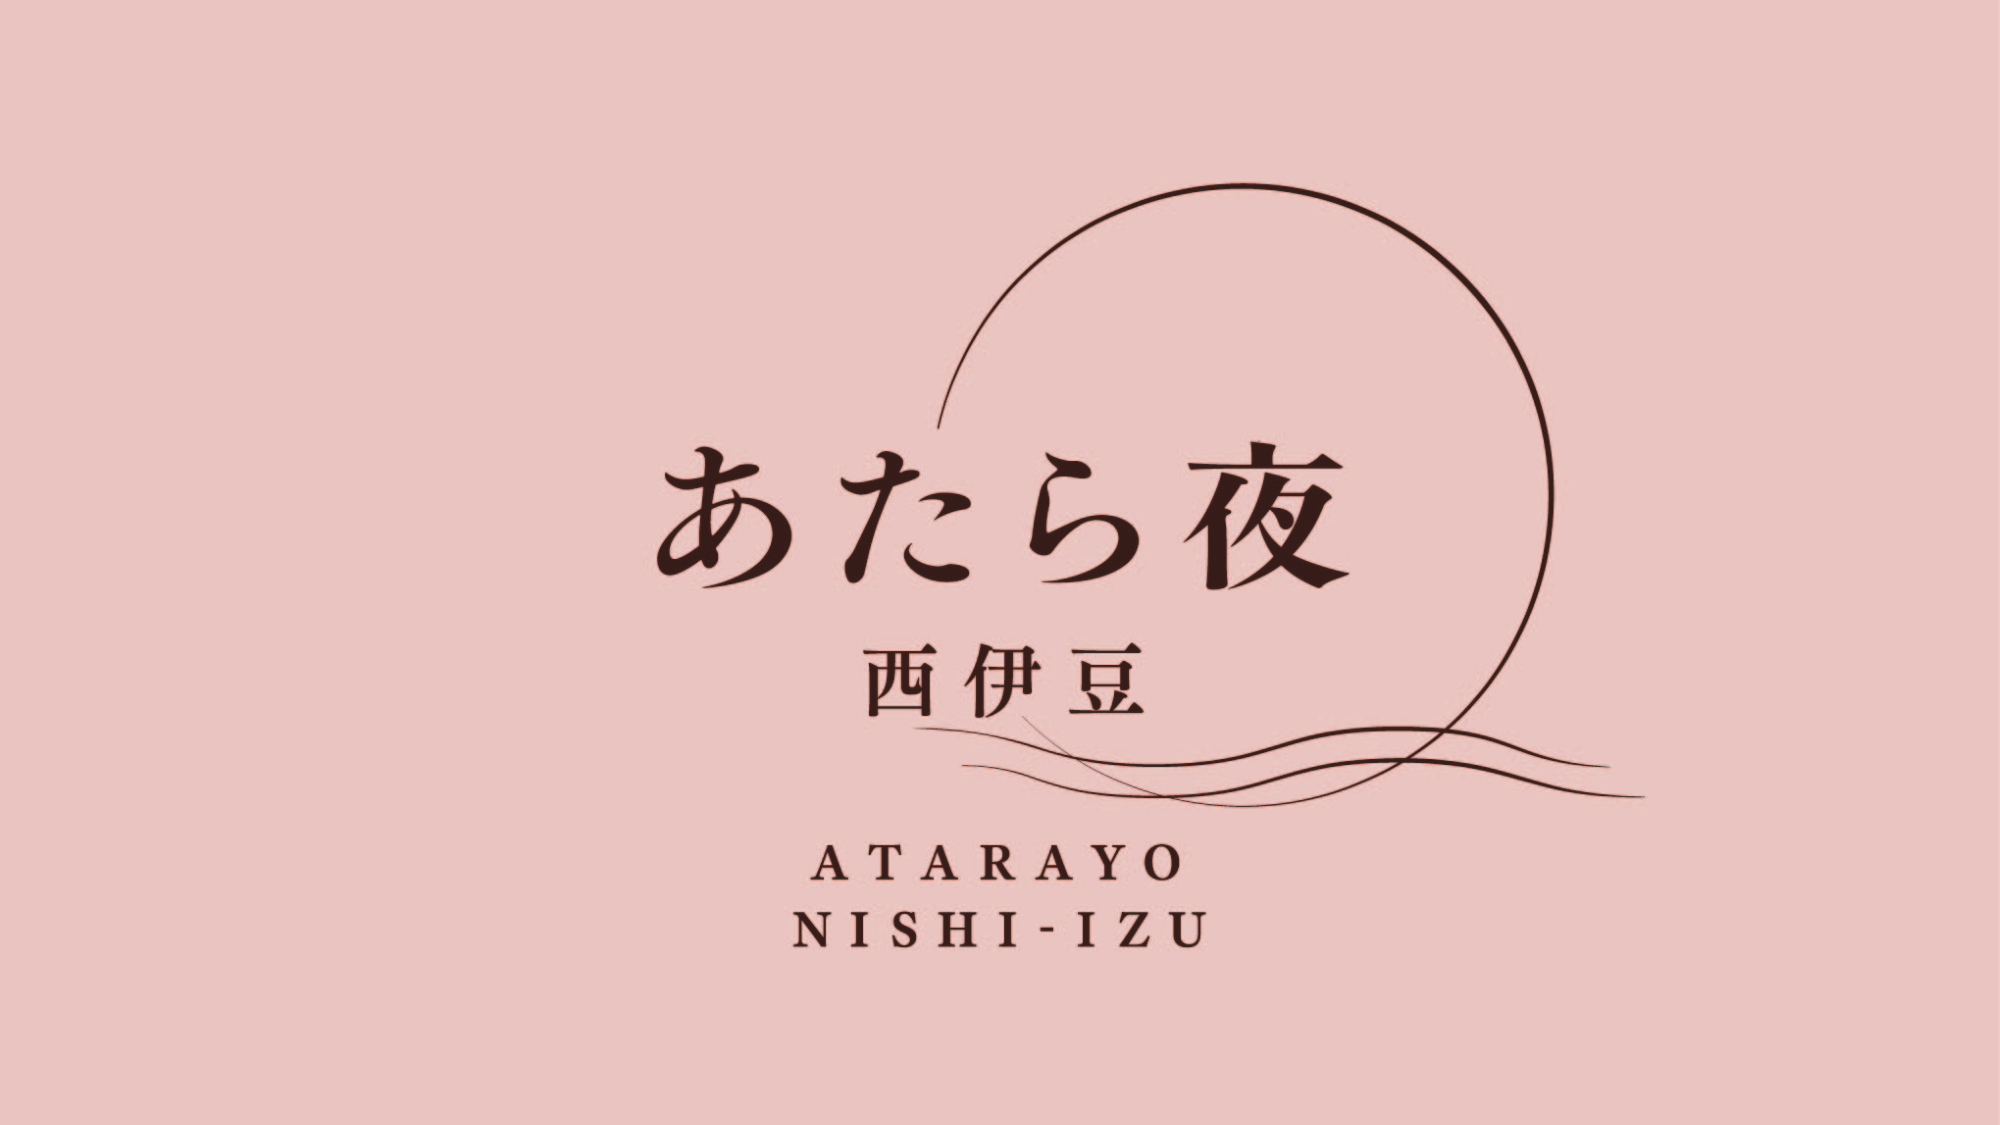 Atarayo Nishiizu